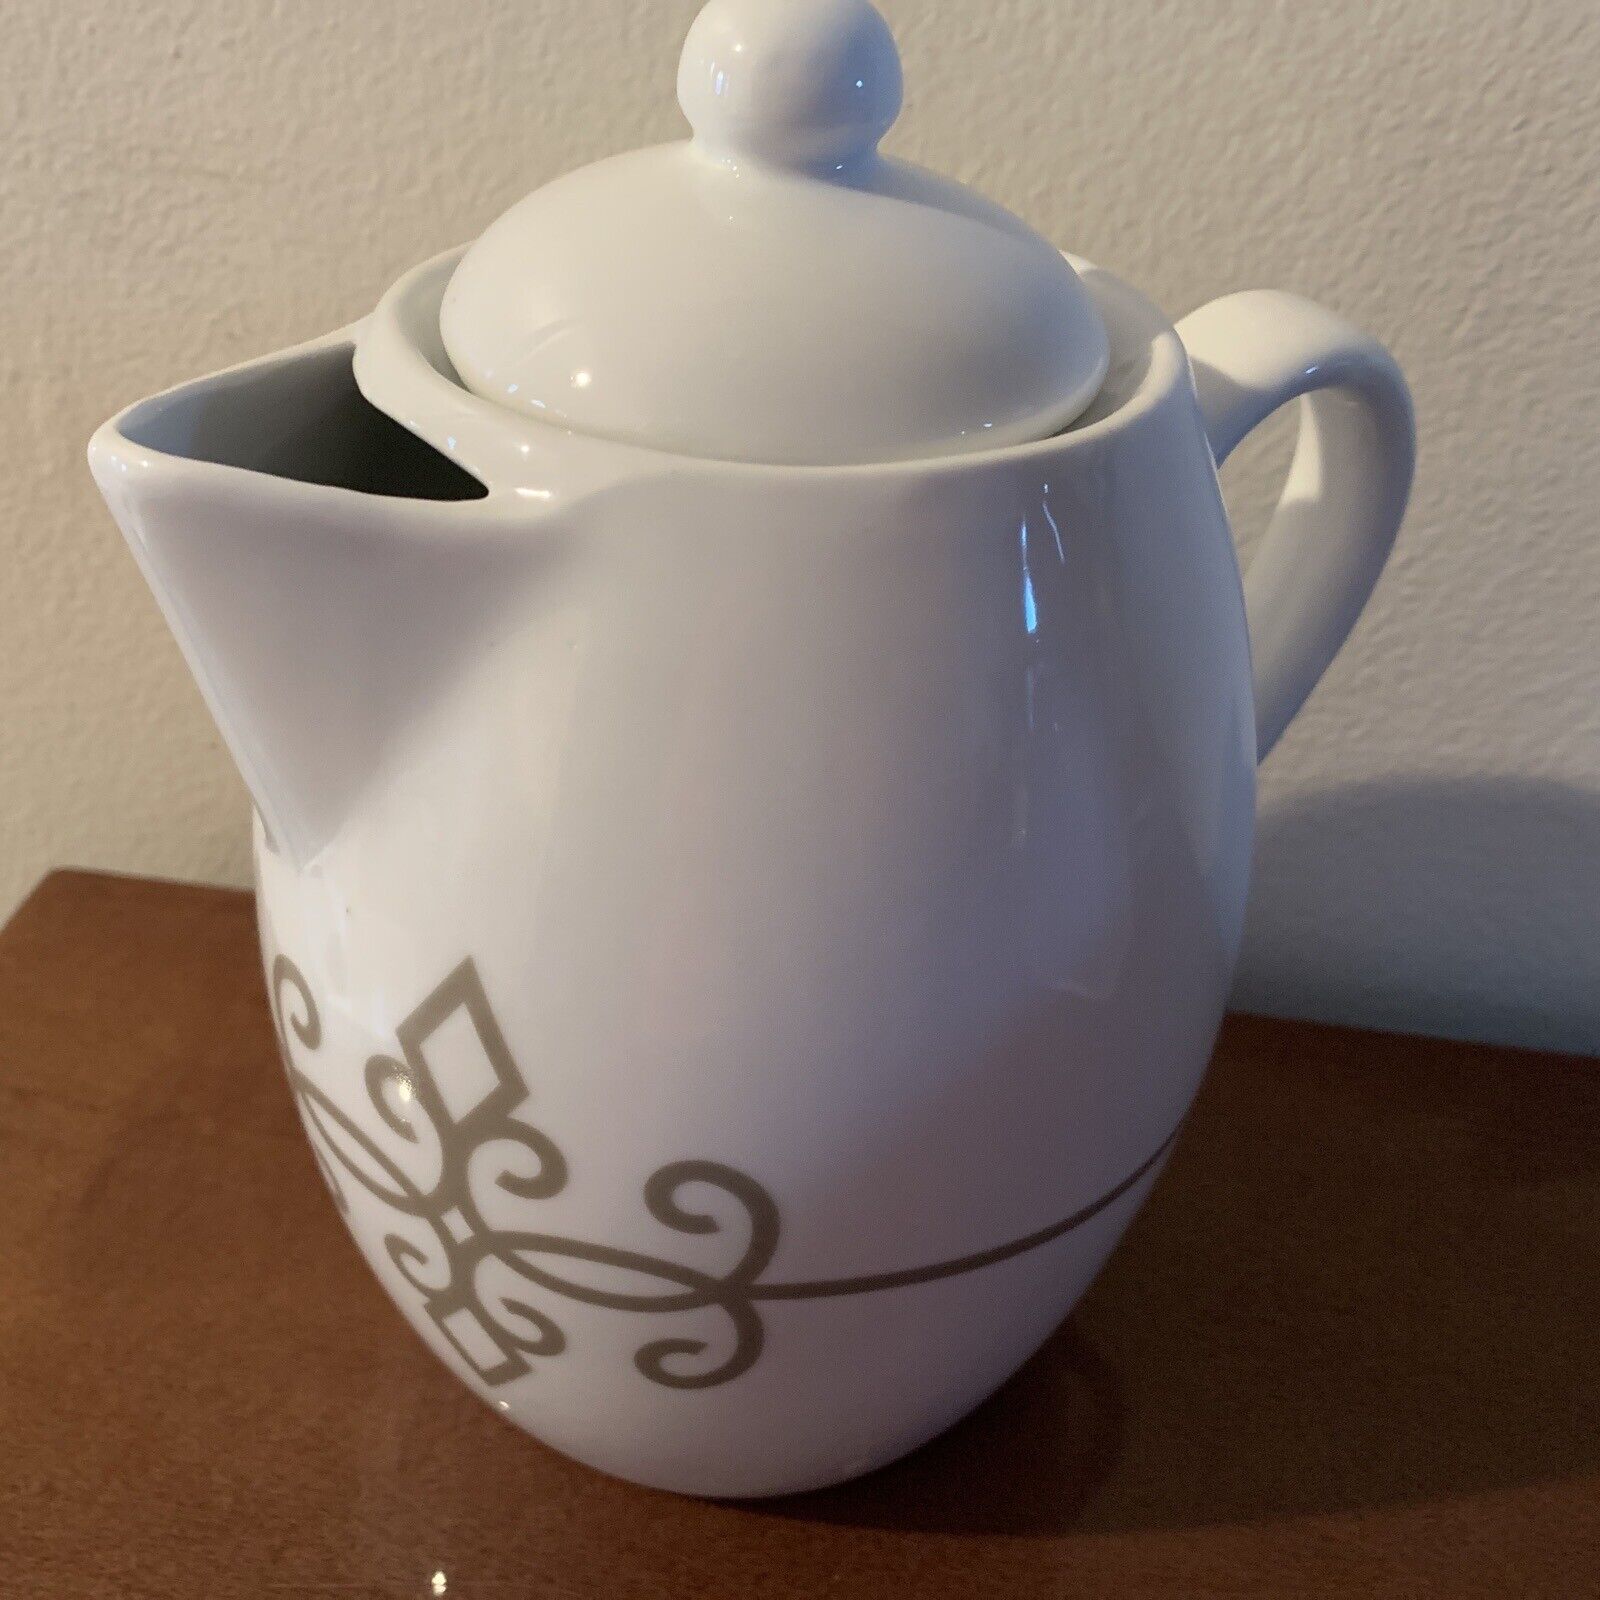 Starbucks Coffee/Tea Pot Server 30.4” Ceramic New w/oBox Gold Scroll Design 2015